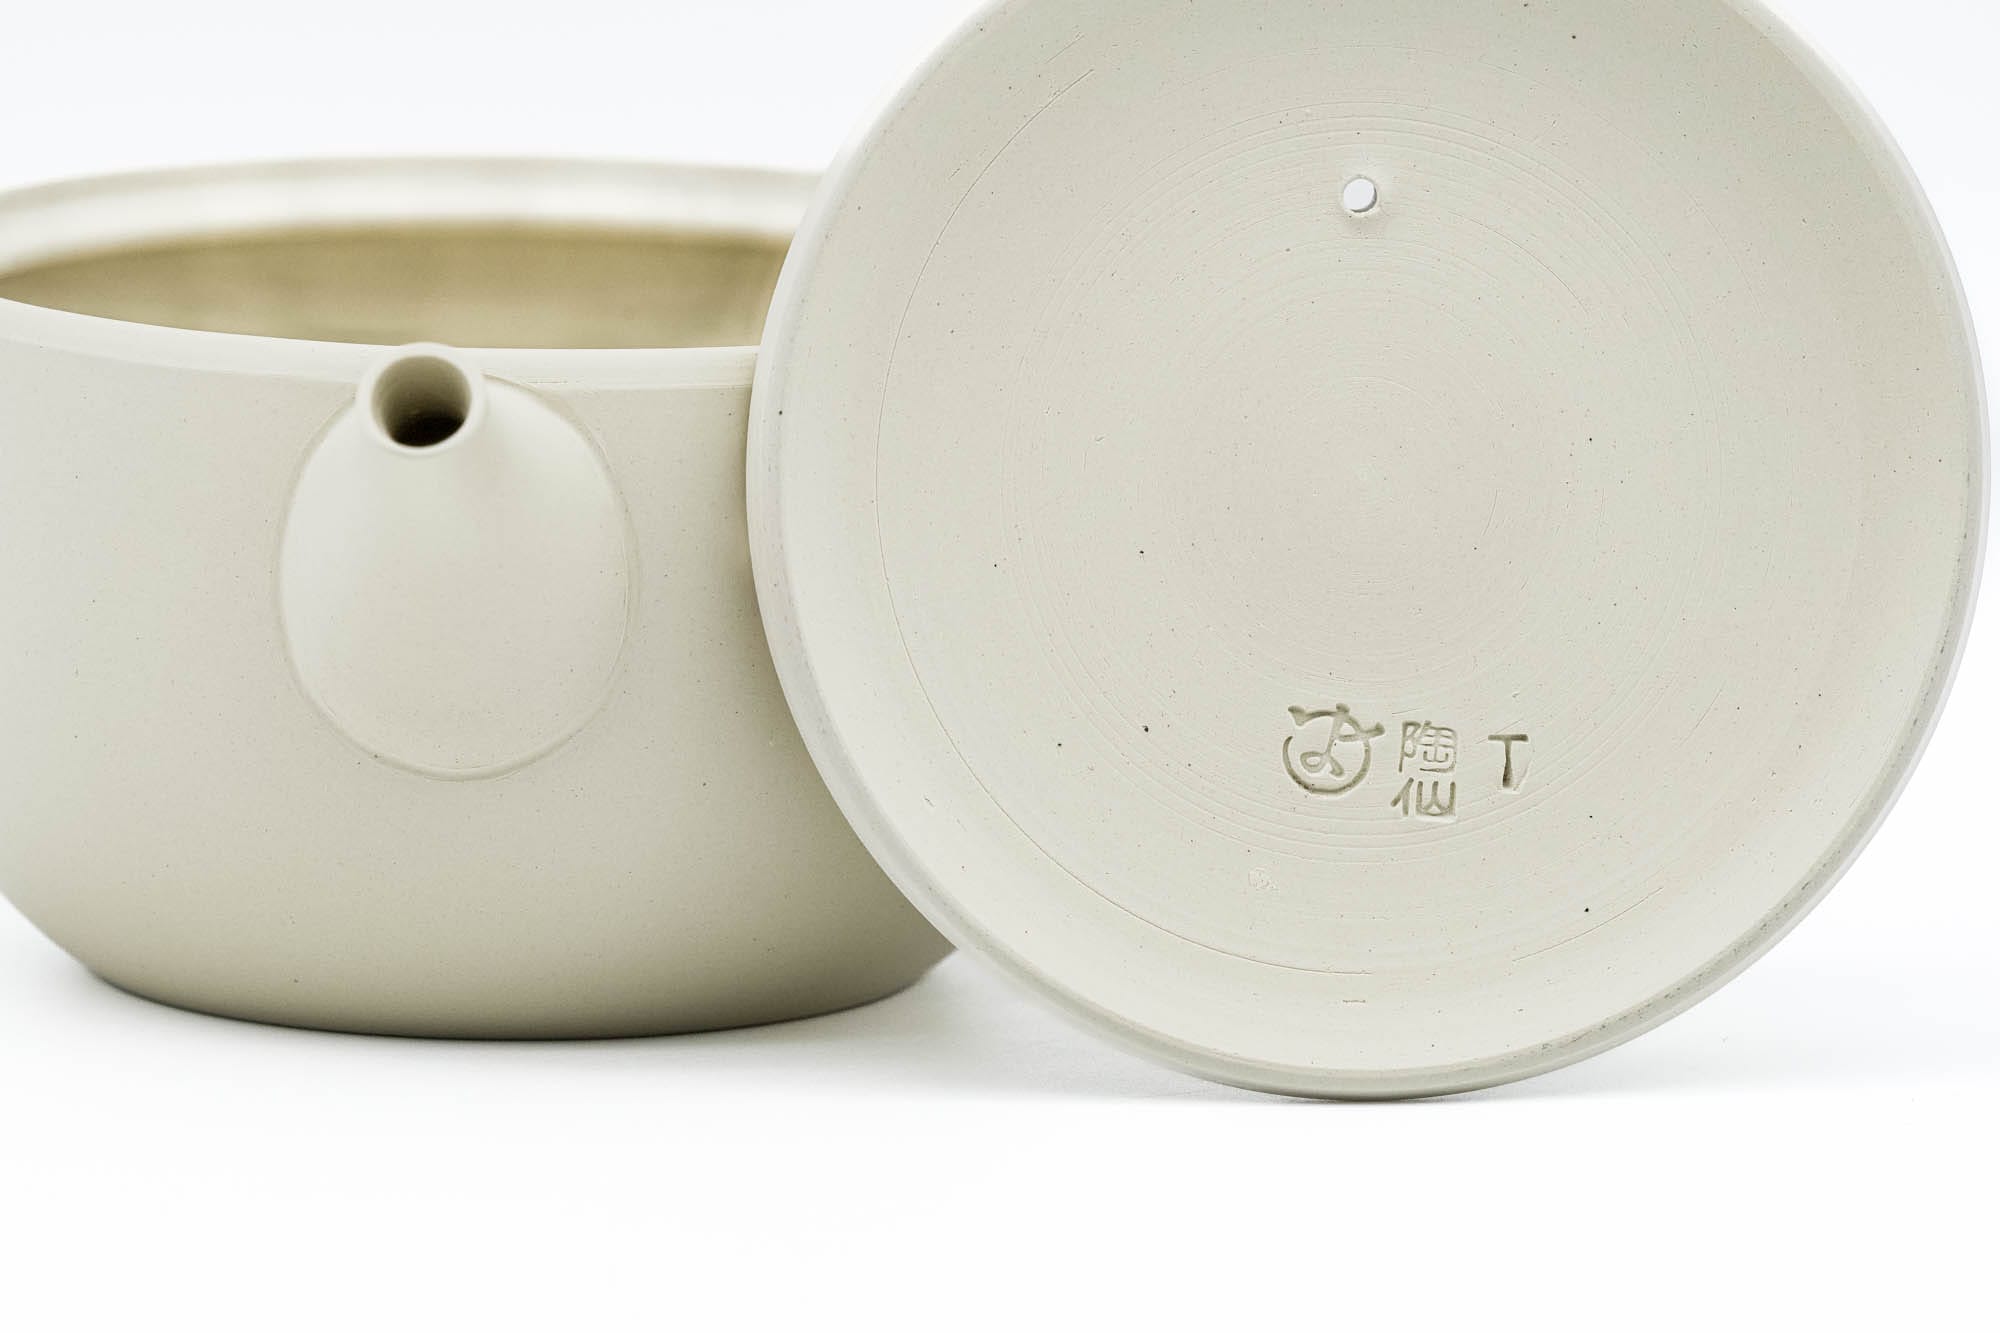 Japanese Tea Set - 陶仙窯 Tosen Kiln - White Tokoname Teapot with Pair of Matte Pink Teacups